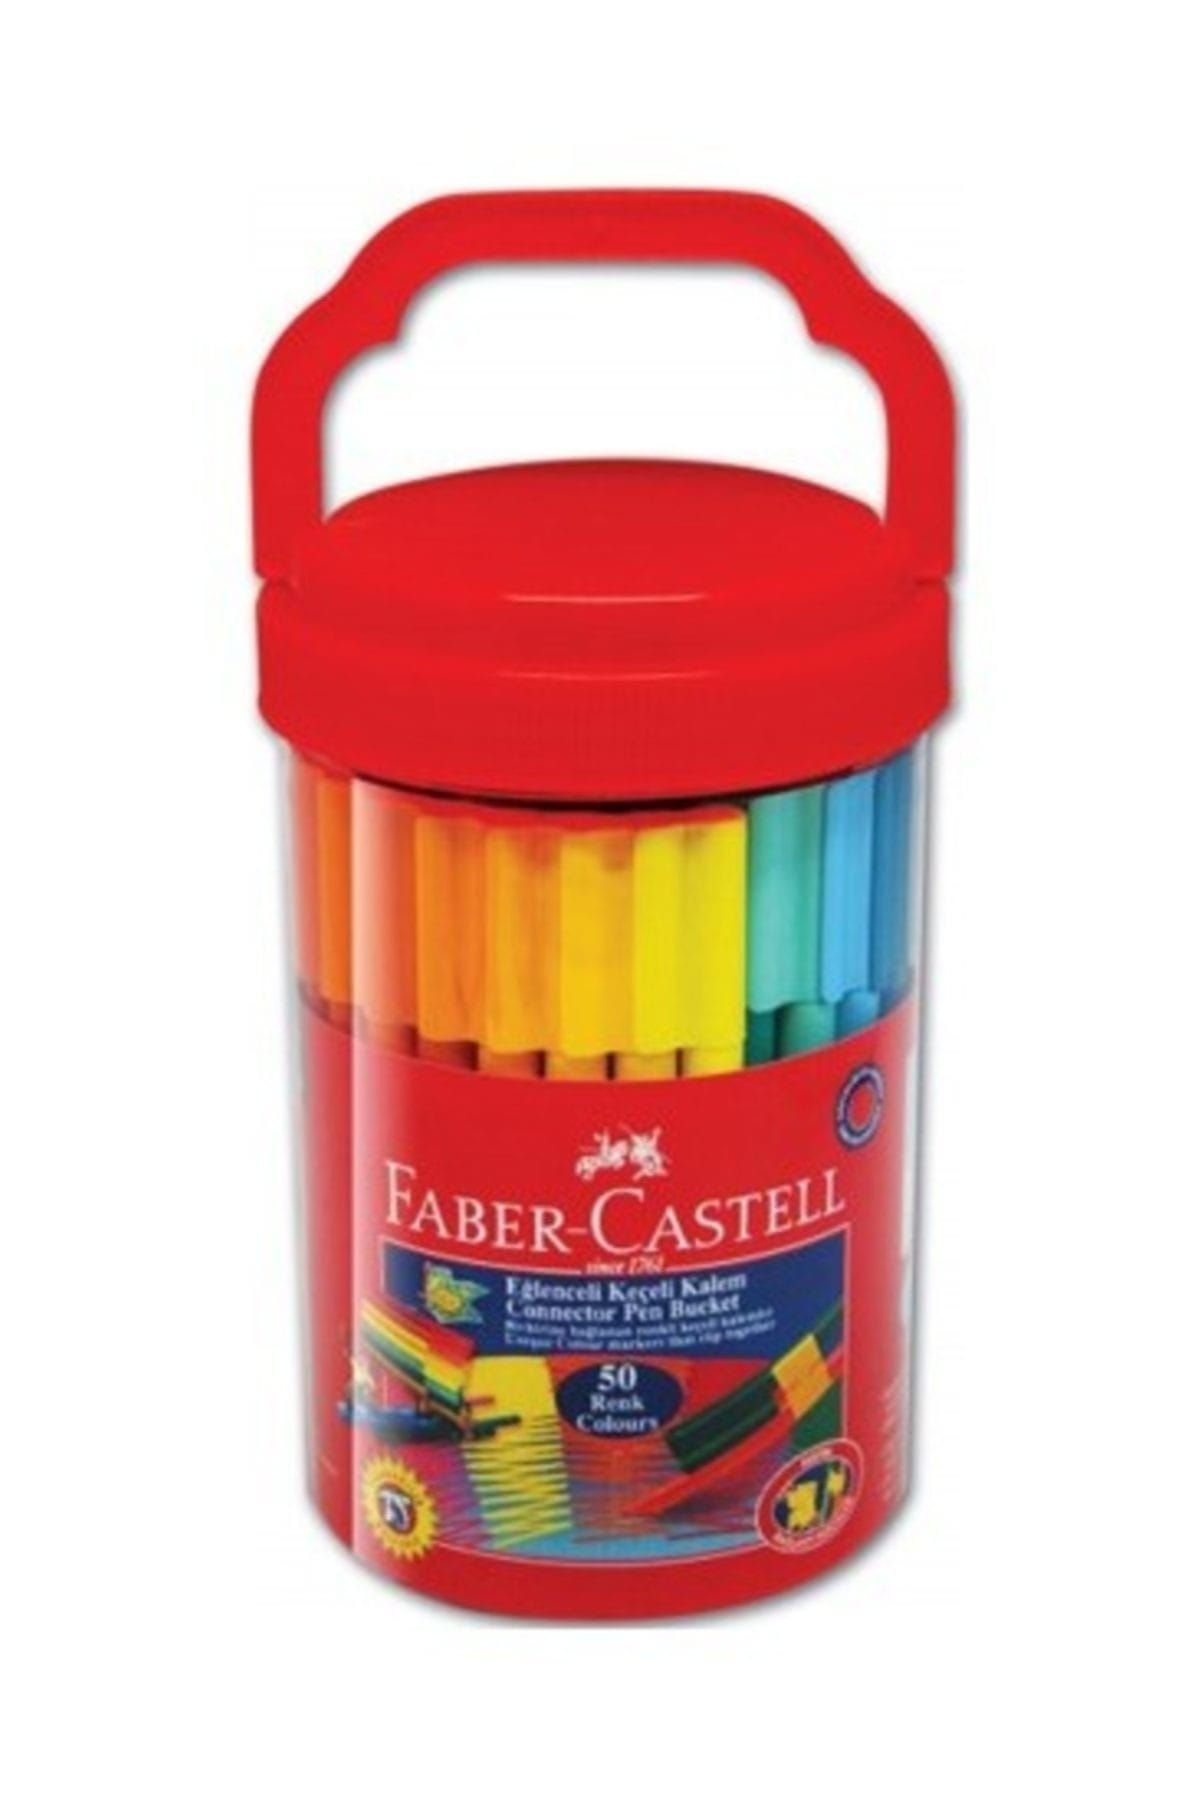 Faber Castell Faber Eğlenceli Keçeli Kalem 50 Renk 155550 111550 /